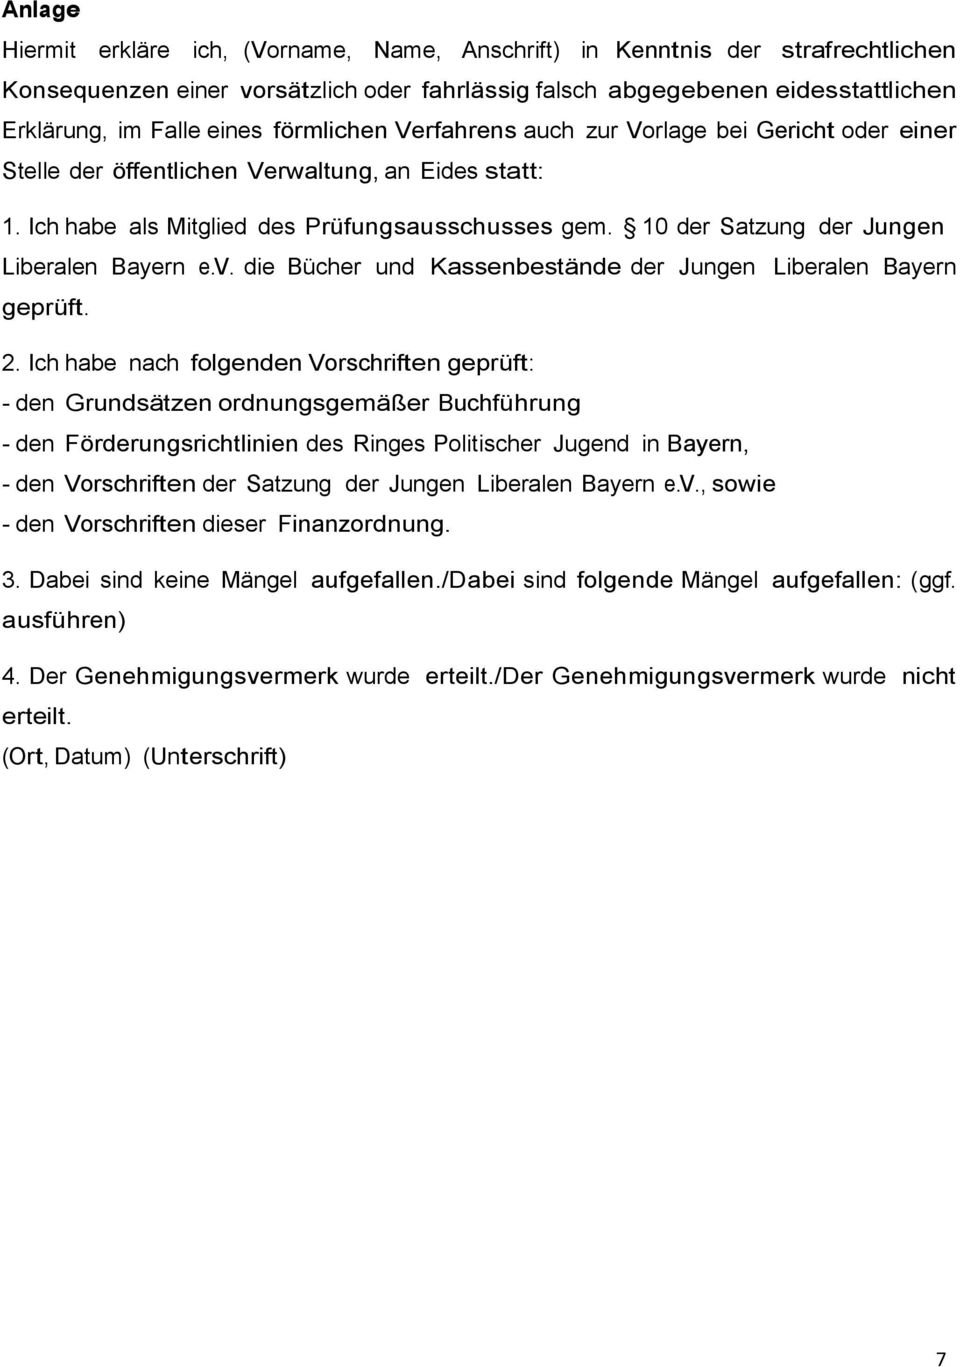 10 der Satzung der Jungen Liberalen Bayern e.v. die Bücher und Kassenbestände der Jungen Liberalen Bayern geprüft. 2.